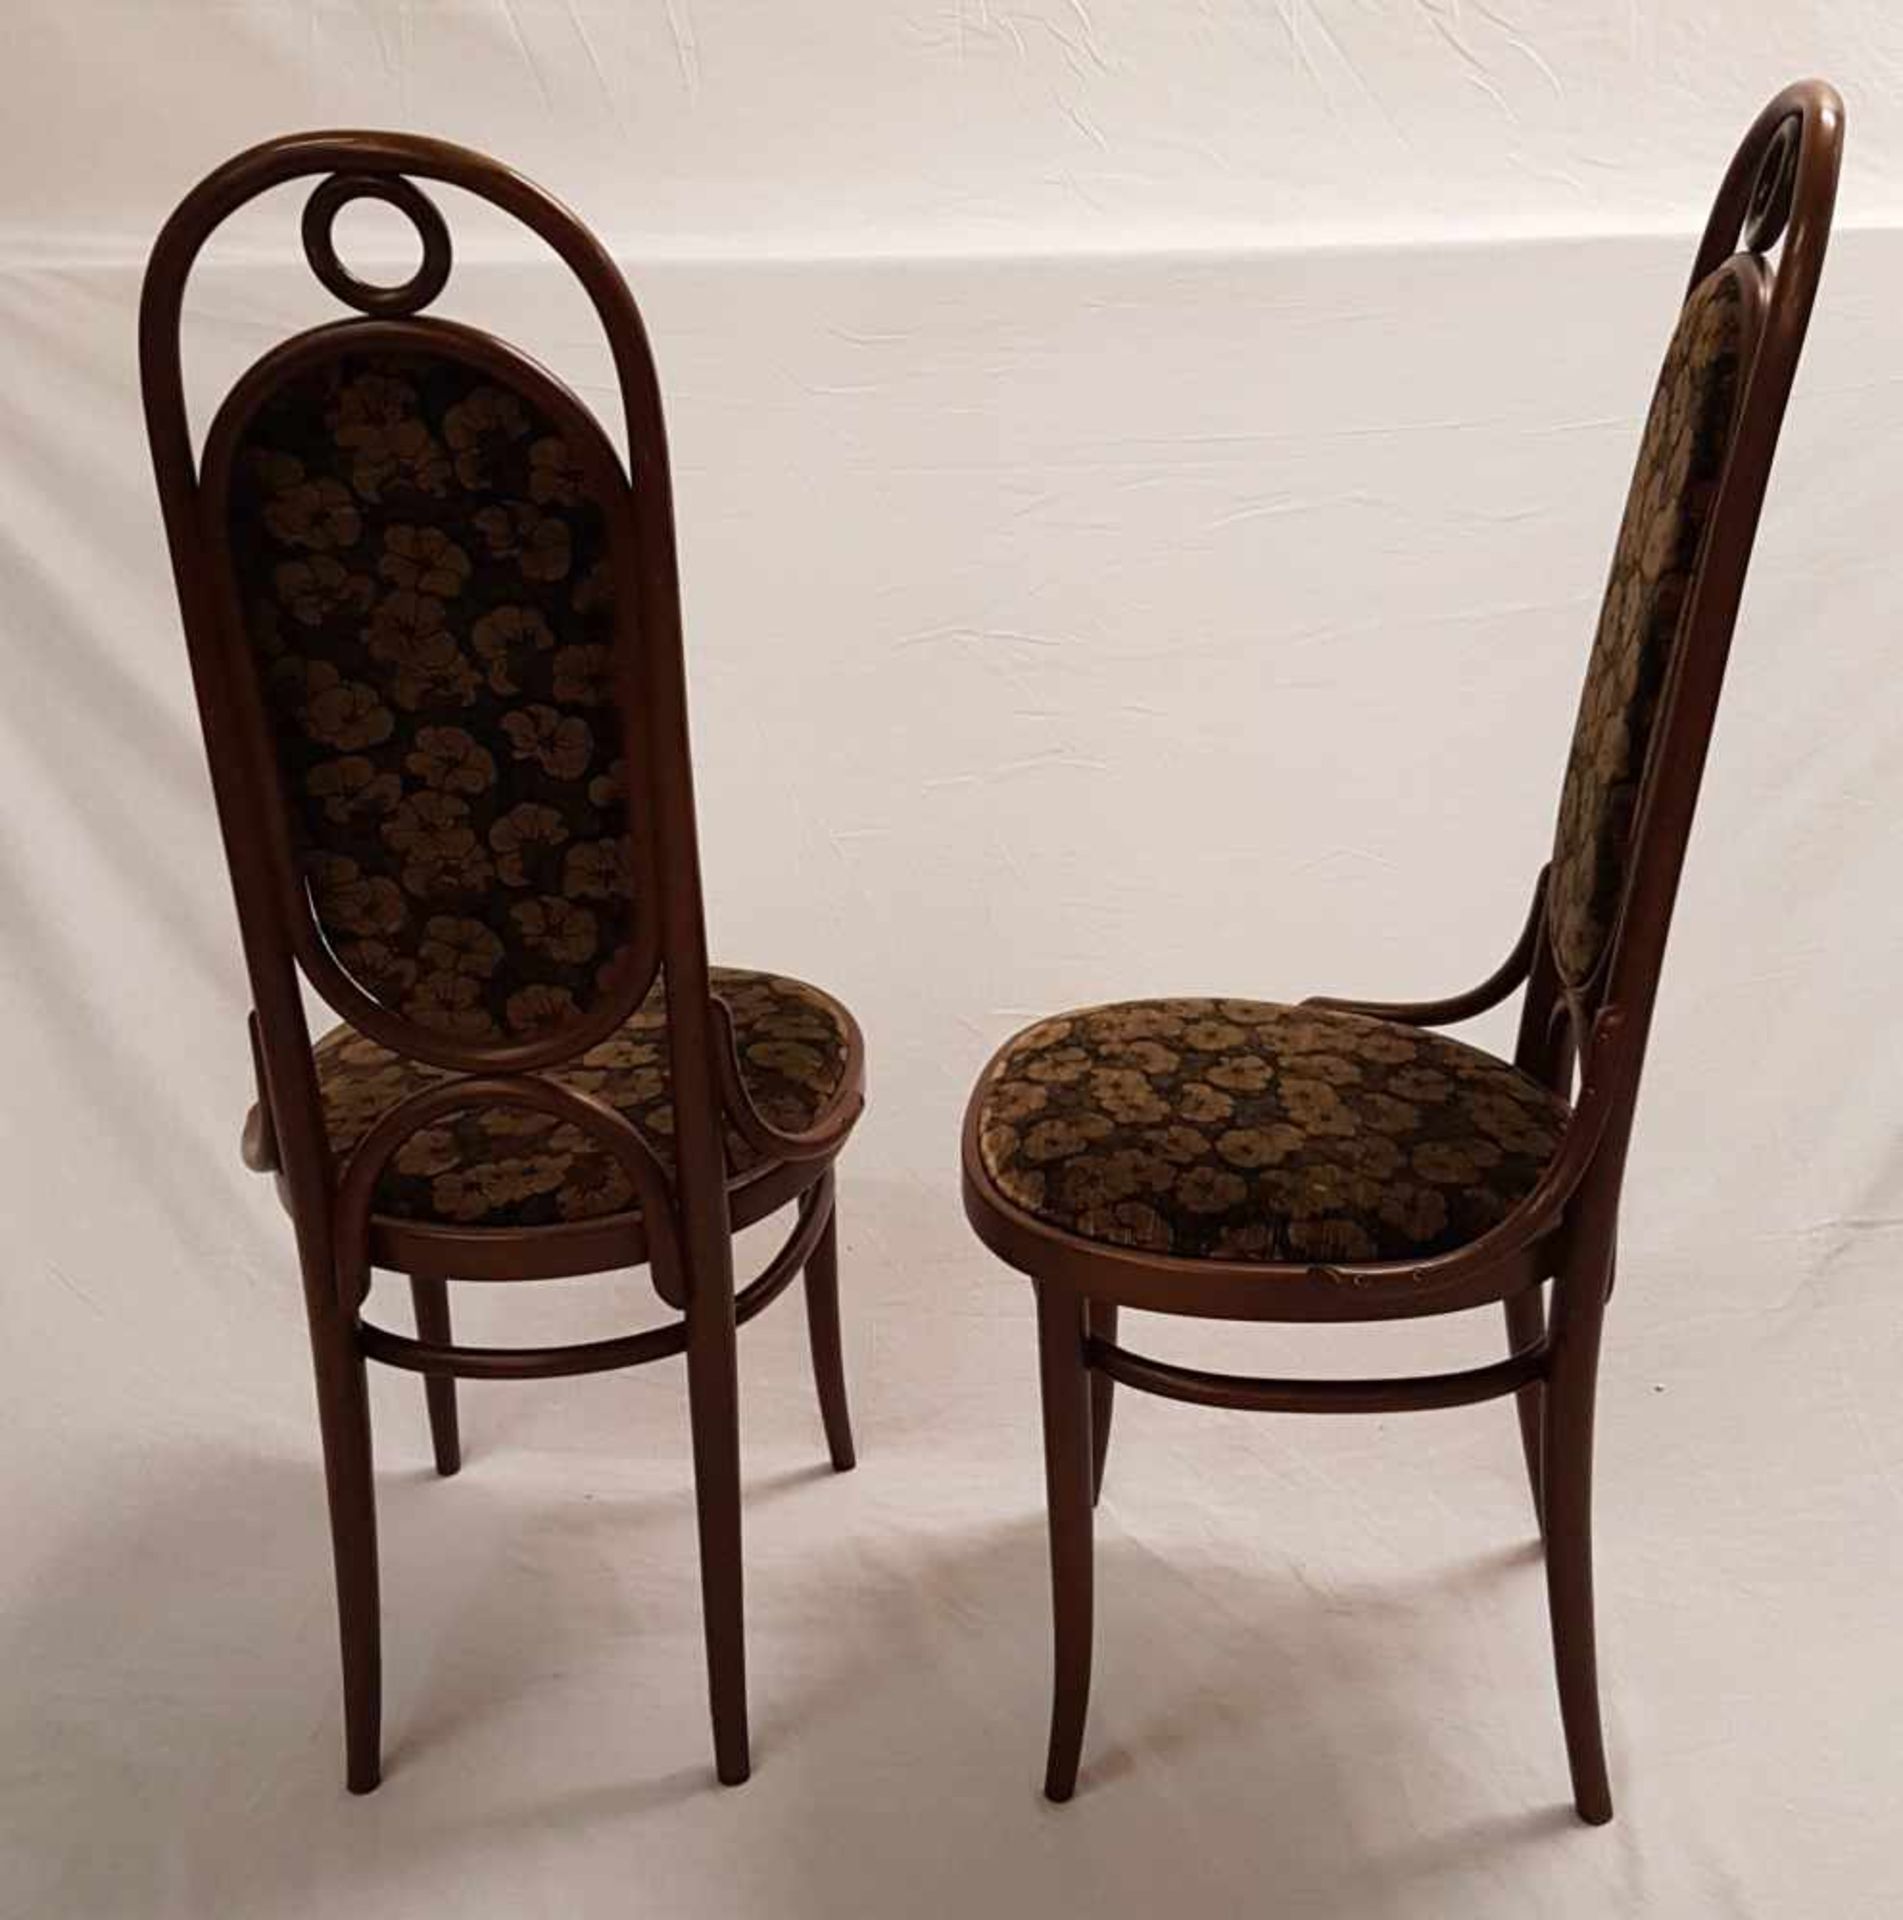 Satz von vier Stühlen - Thonet,Buchenbugholz,hohe Lehne,Zargeninnenseiten gemarkt "Thonet 78", - Bild 4 aus 6